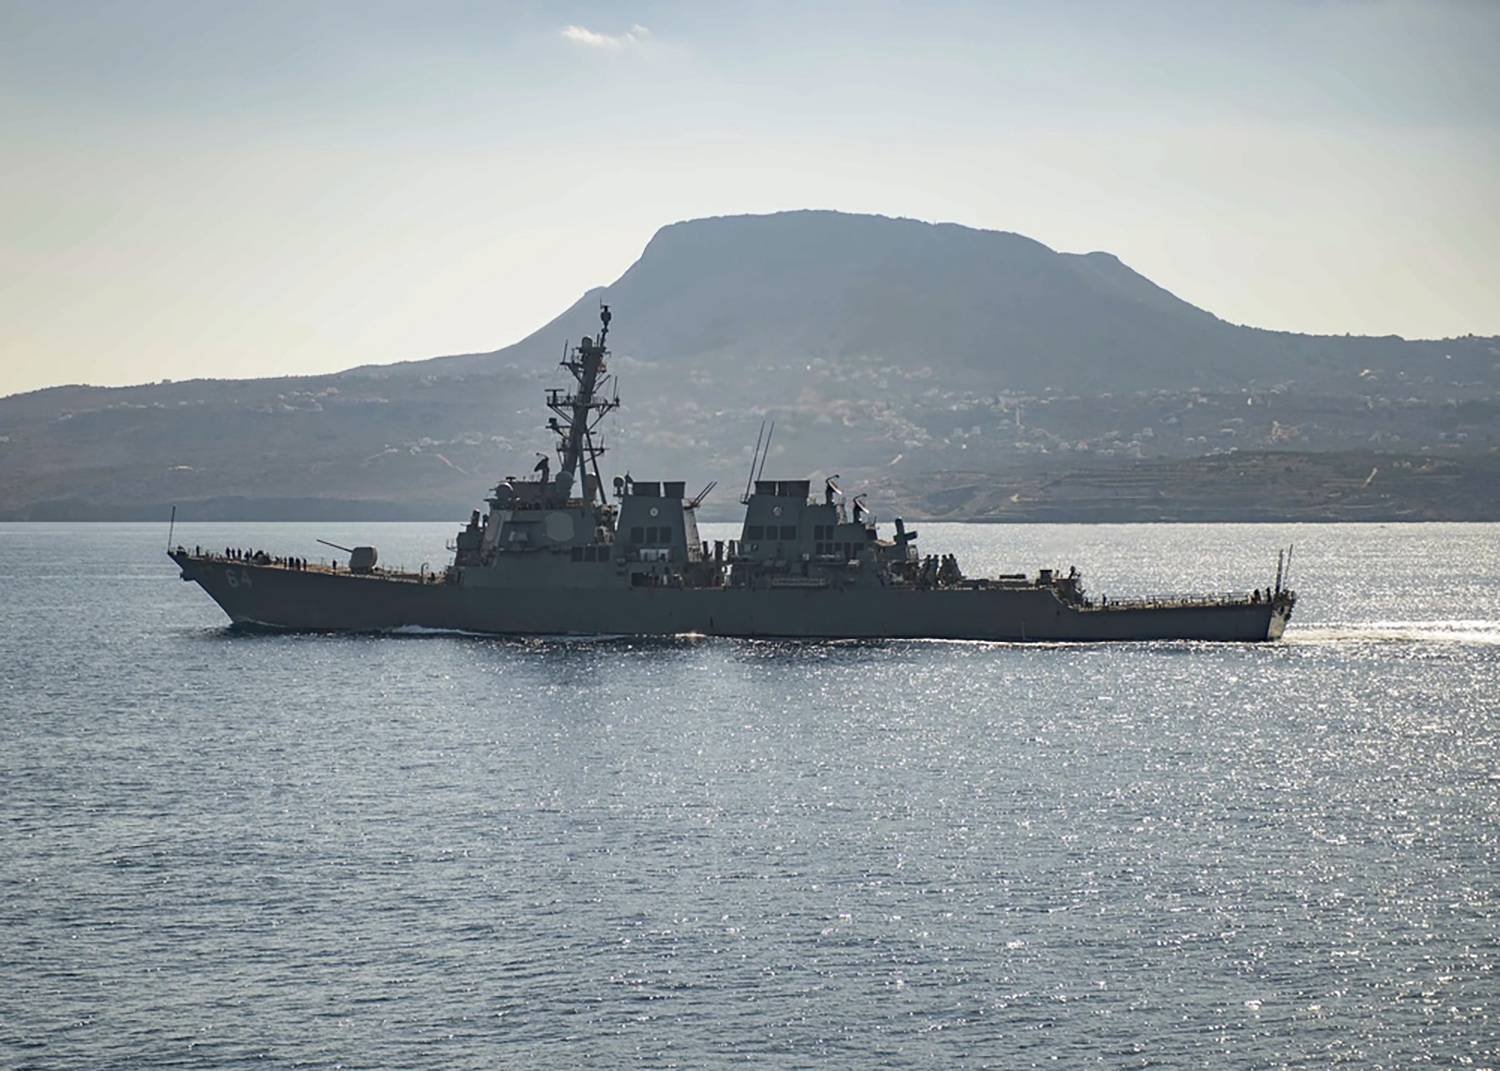 البحرية البريطانية تعلن عن هجوم حوثي على سفينة لها قبالة السواحل اليمنية